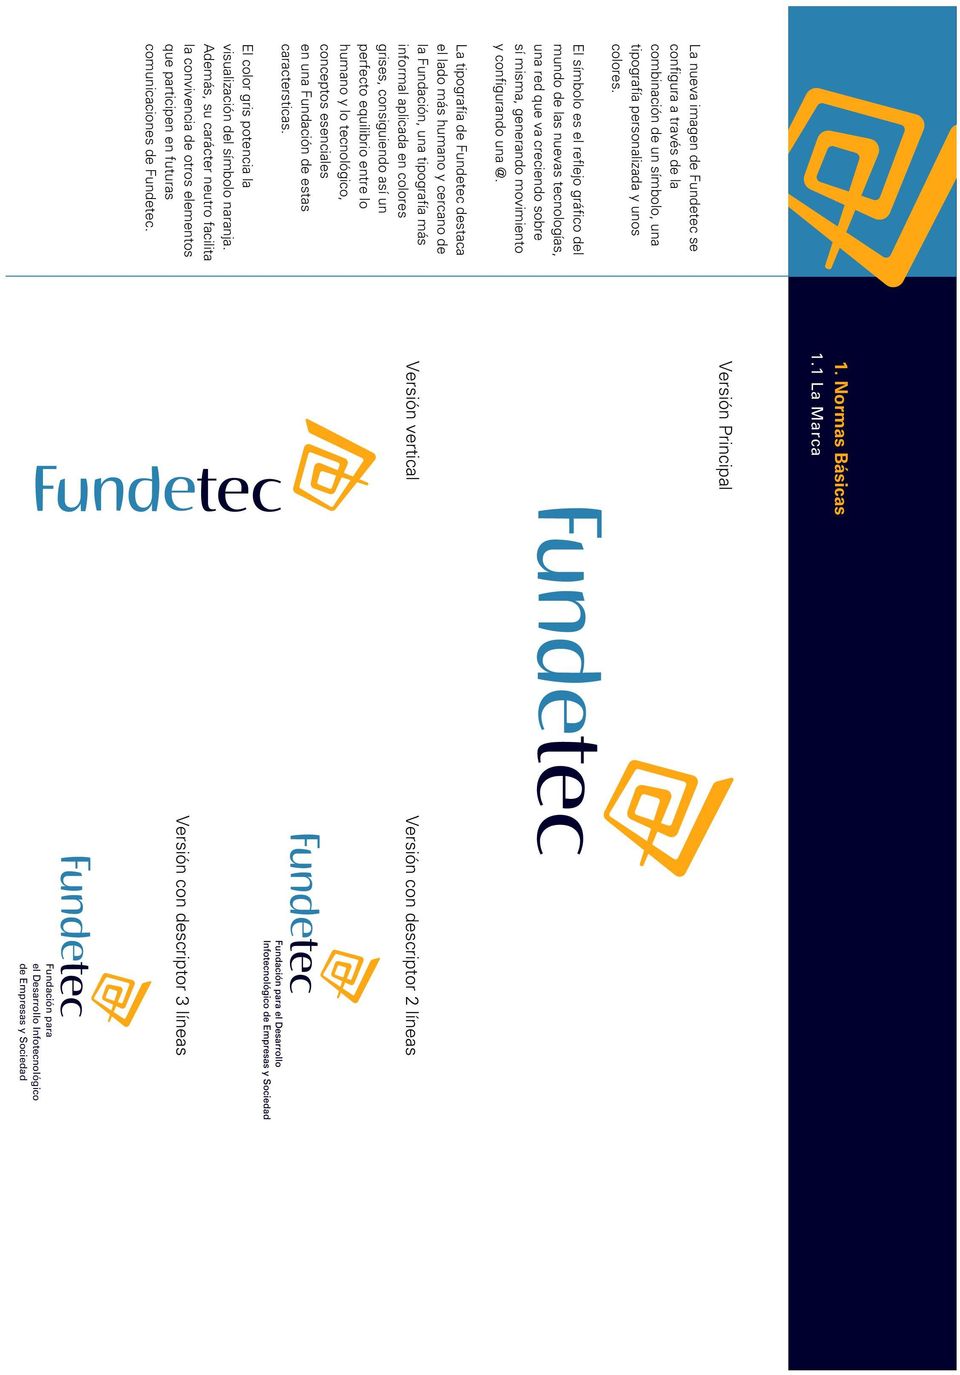 La tipografía de Fundetec destaca el lado más humano y cercano de la Fundación, una tipografía más informal aplicada en colores grises, consiguiendo así un perfecto equilibrio entre lo humano y lo